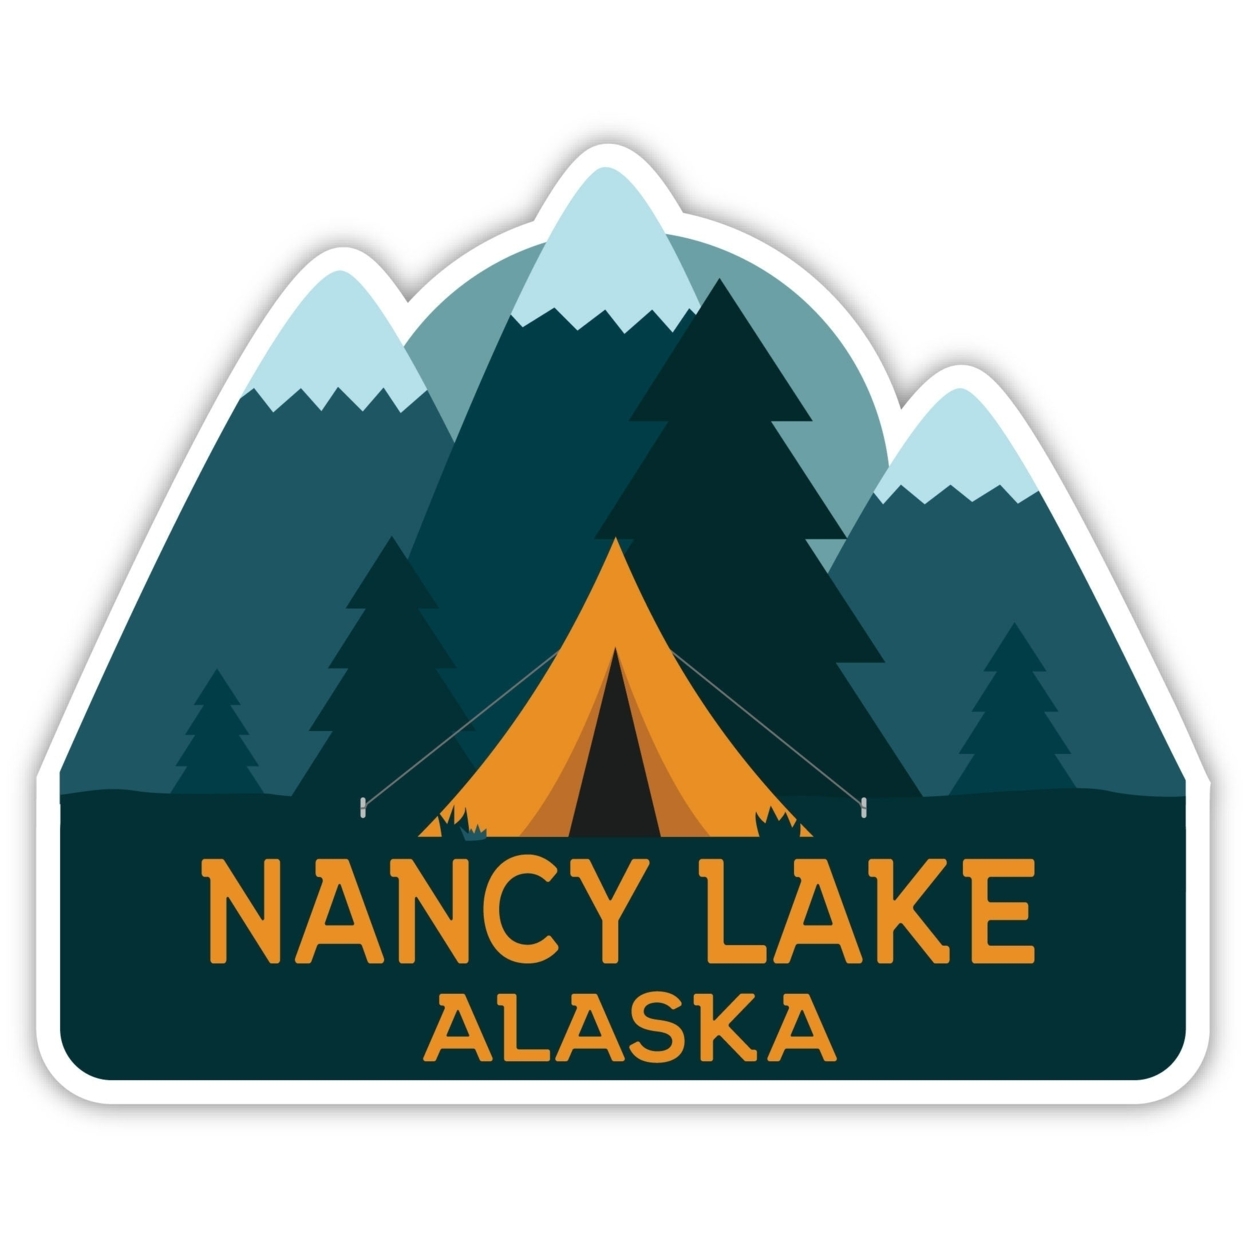 Nancy Lake Alaska Souvenir Decorative Stickers (Choose Theme And Size) - Single Unit, 4-Inch, Tent